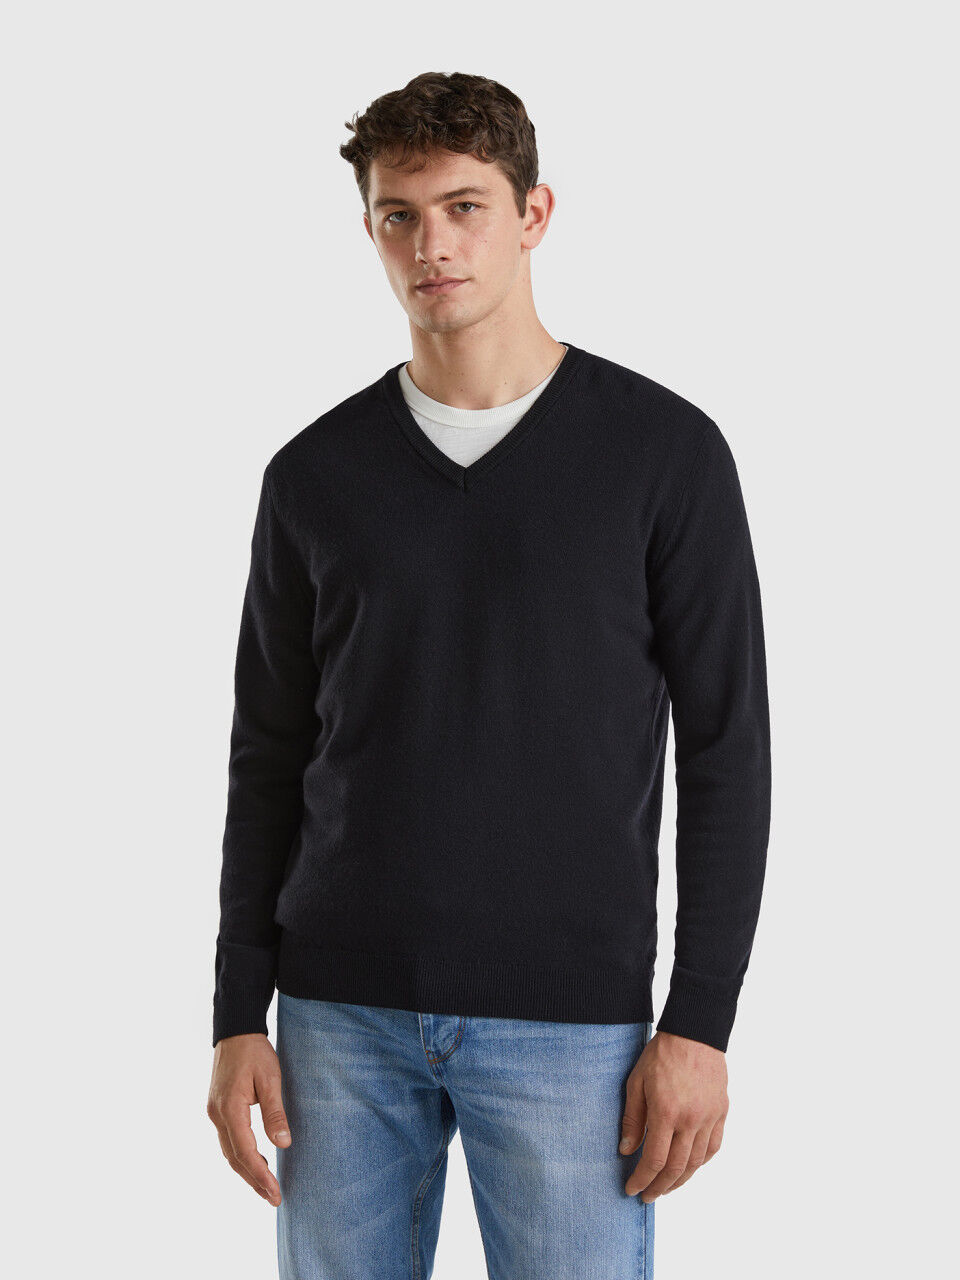 Designer Brand Mens Gray V Neck Merino Blend Pullover Sweater XL